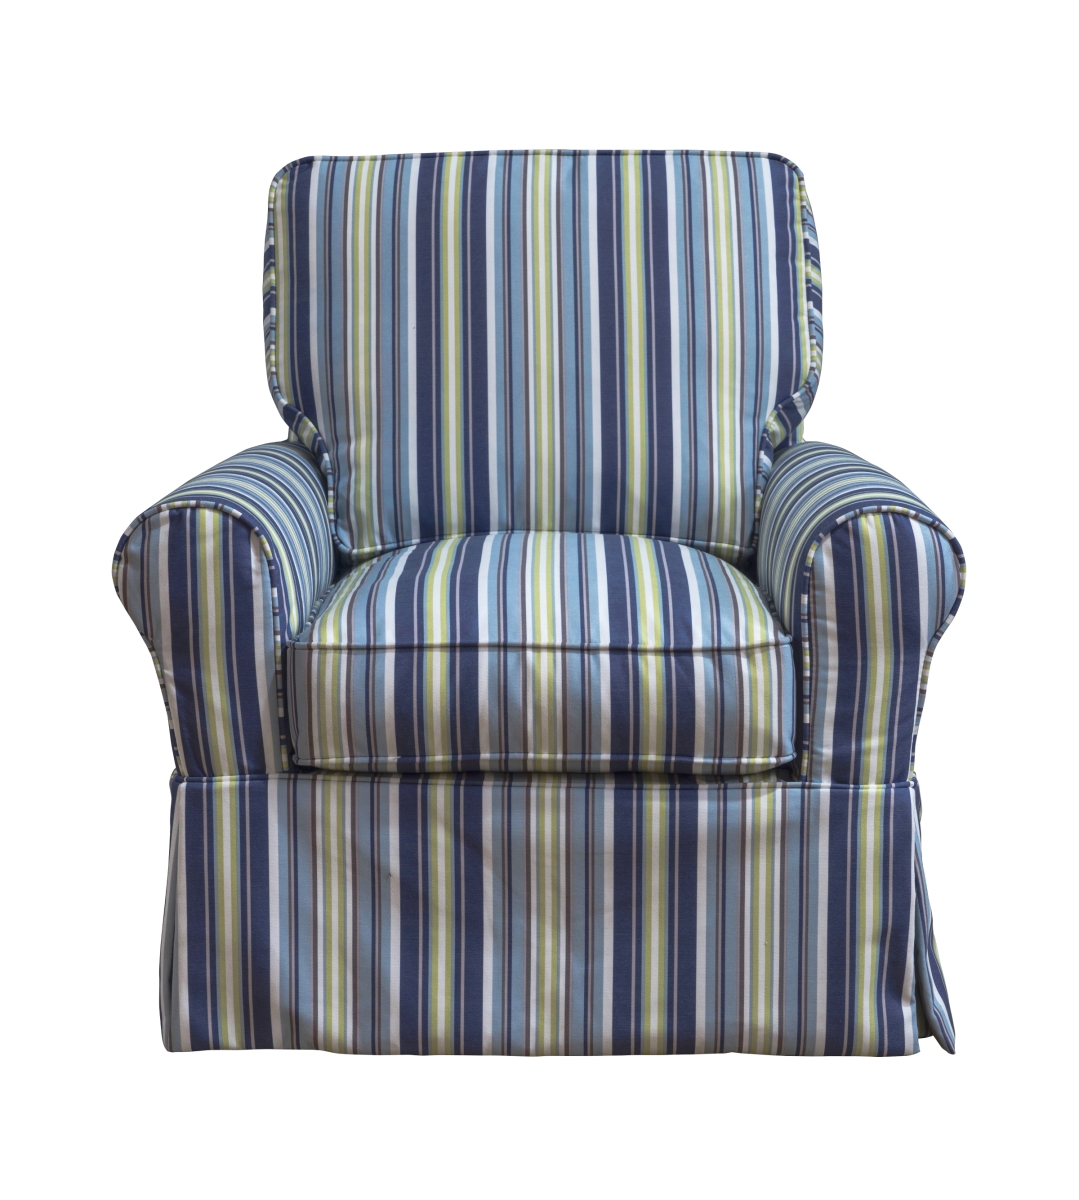 Su-114993sc-395225 Horizon Box Cushion Chair Slipcover - Blue Striped